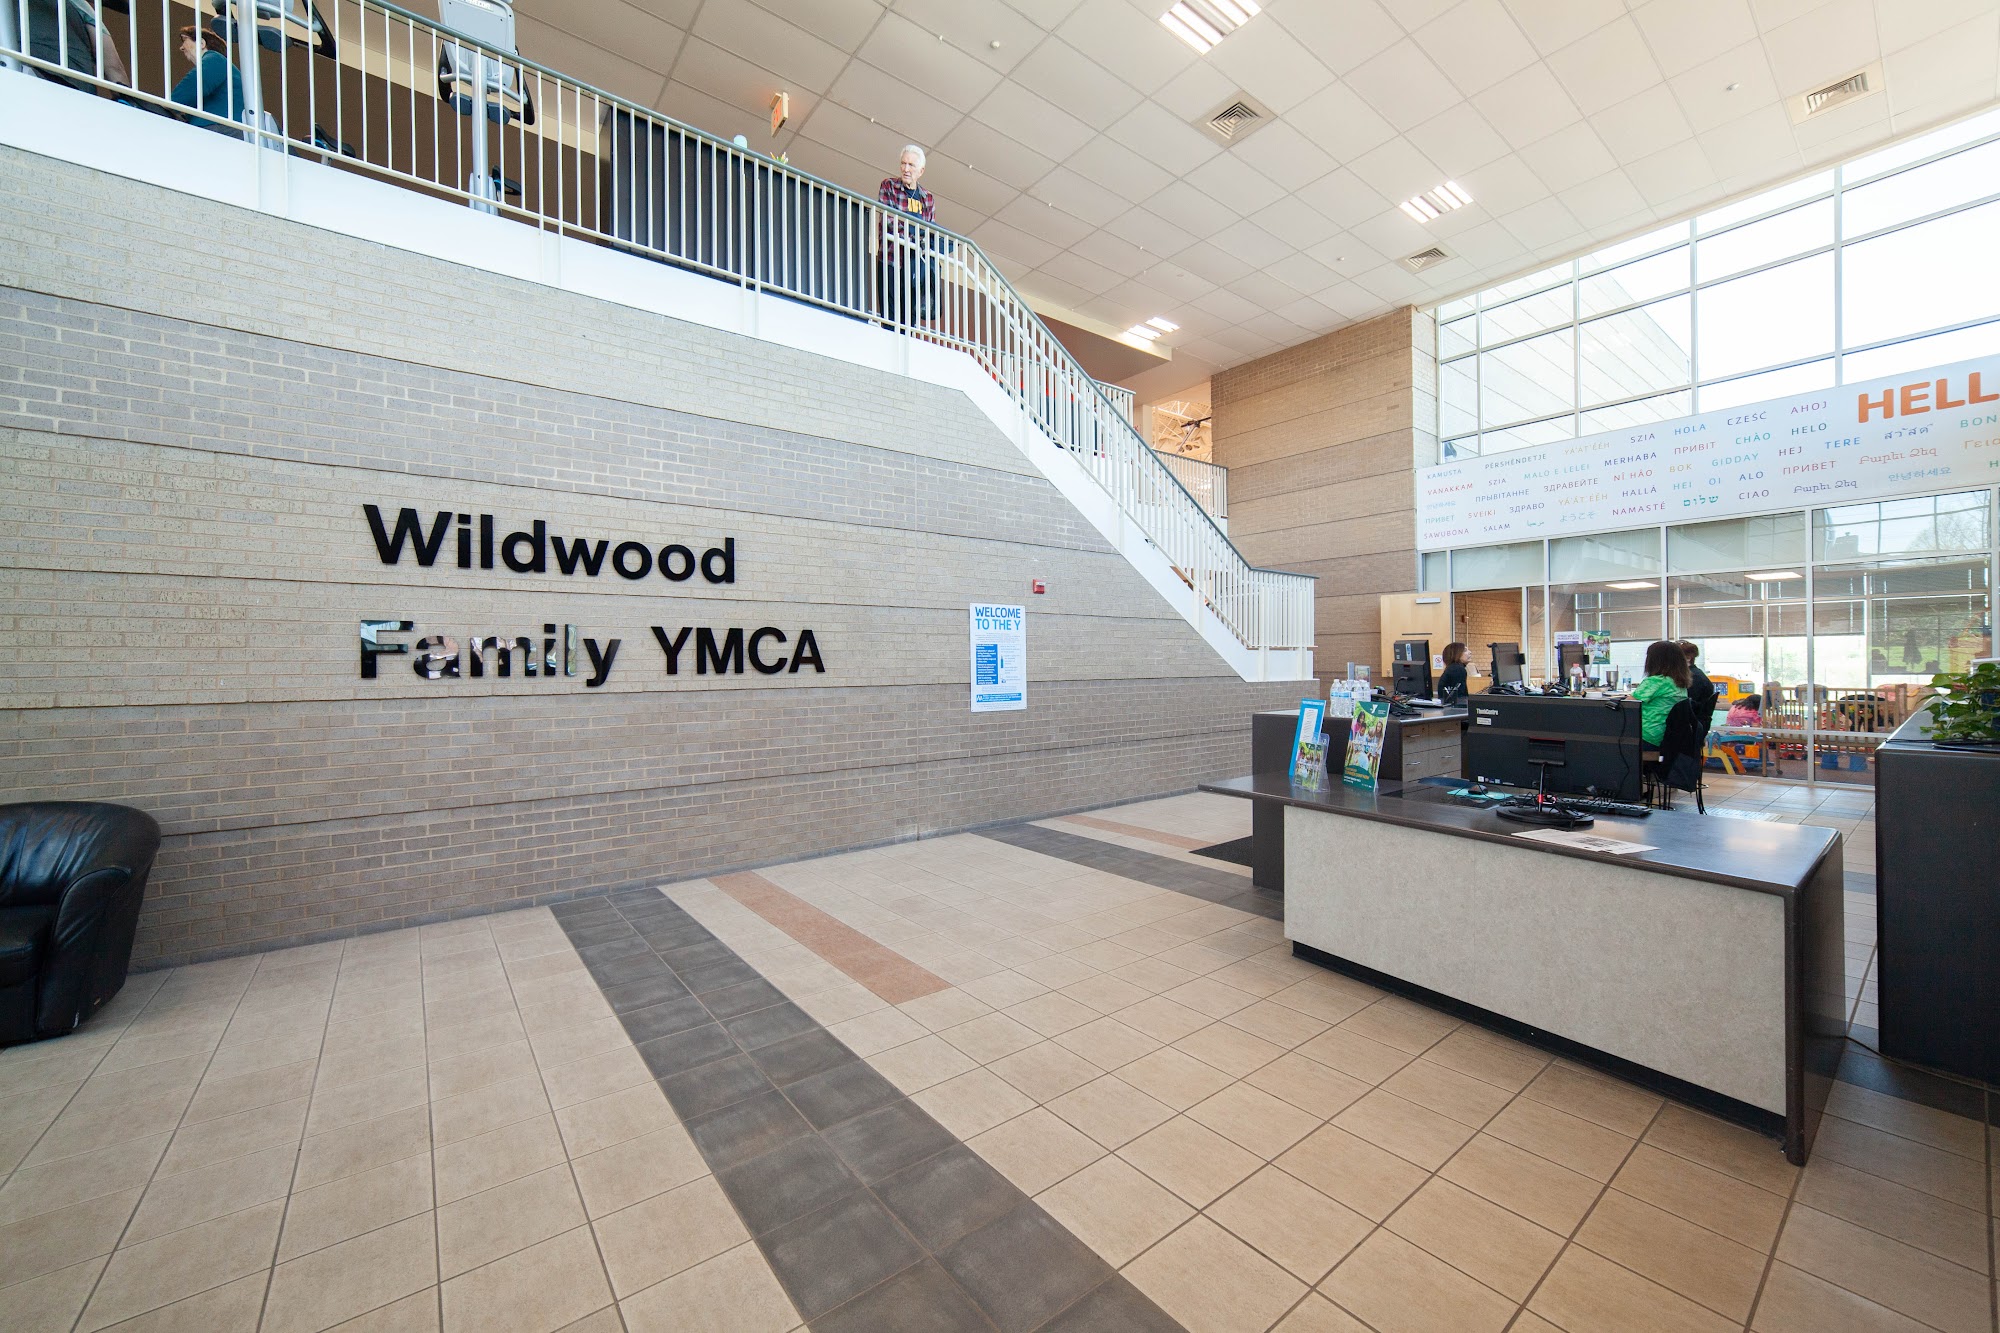 Wildwood YMCA